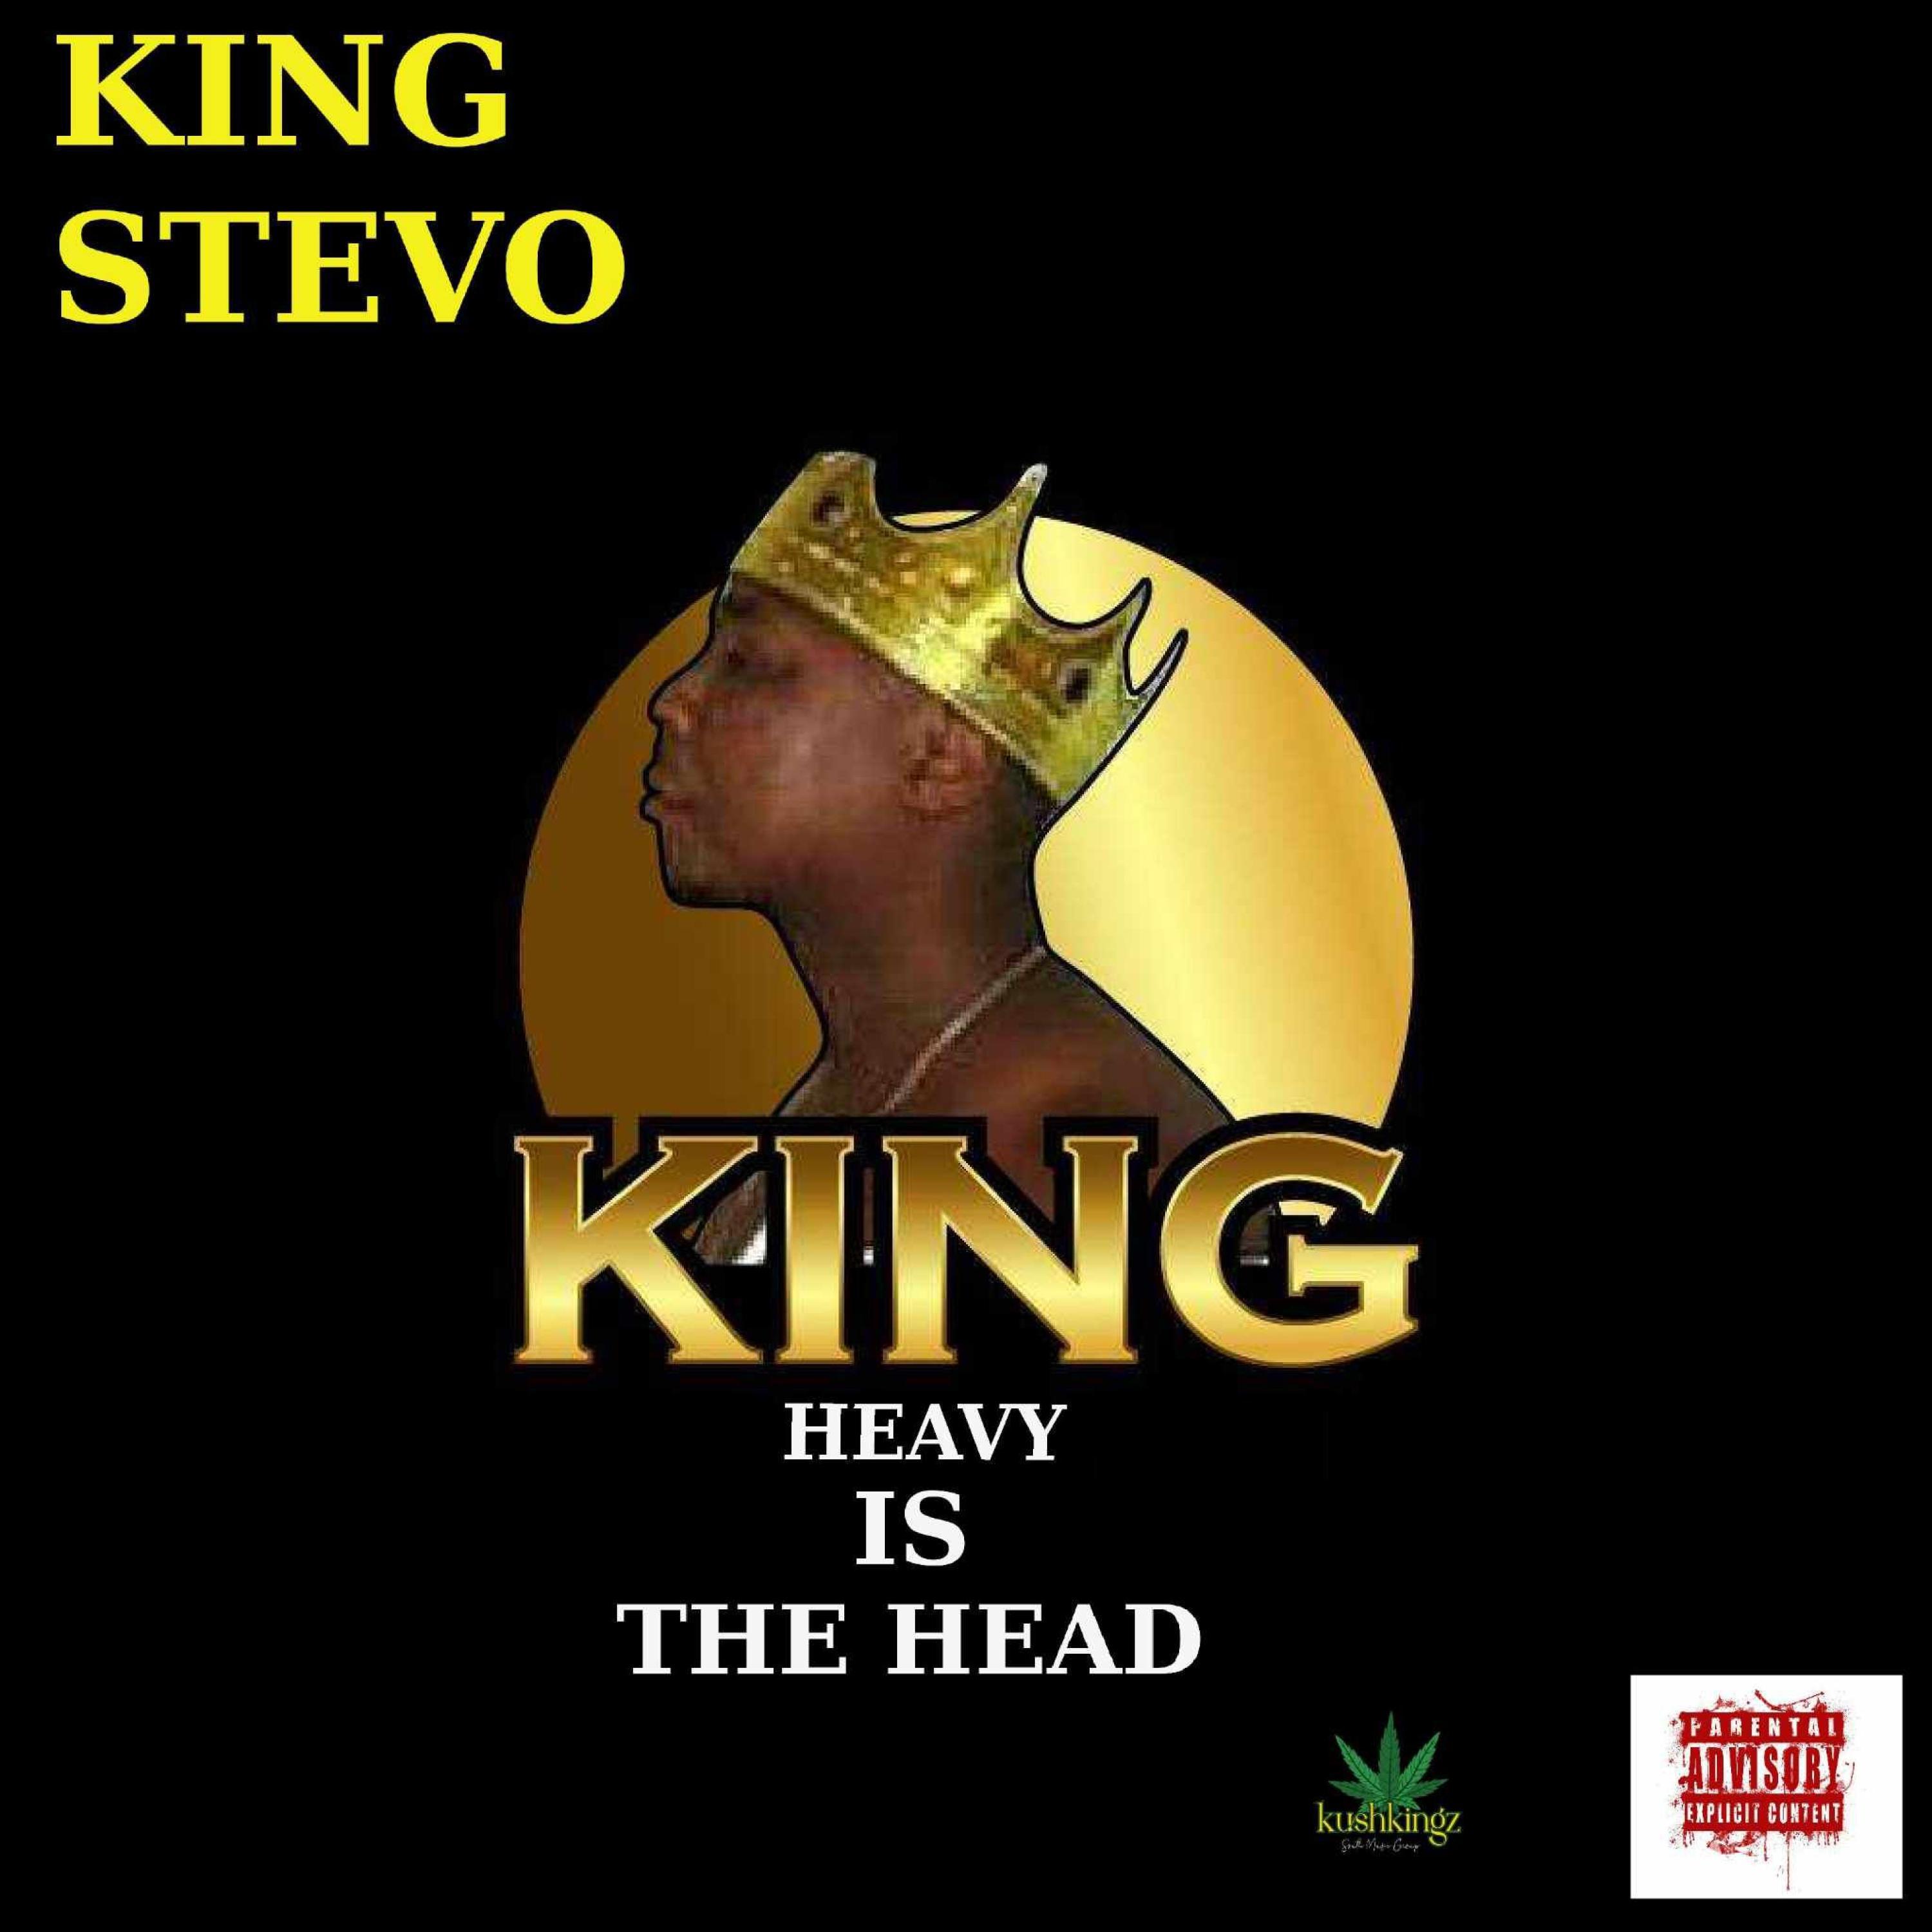 King Stevo - Keep hating